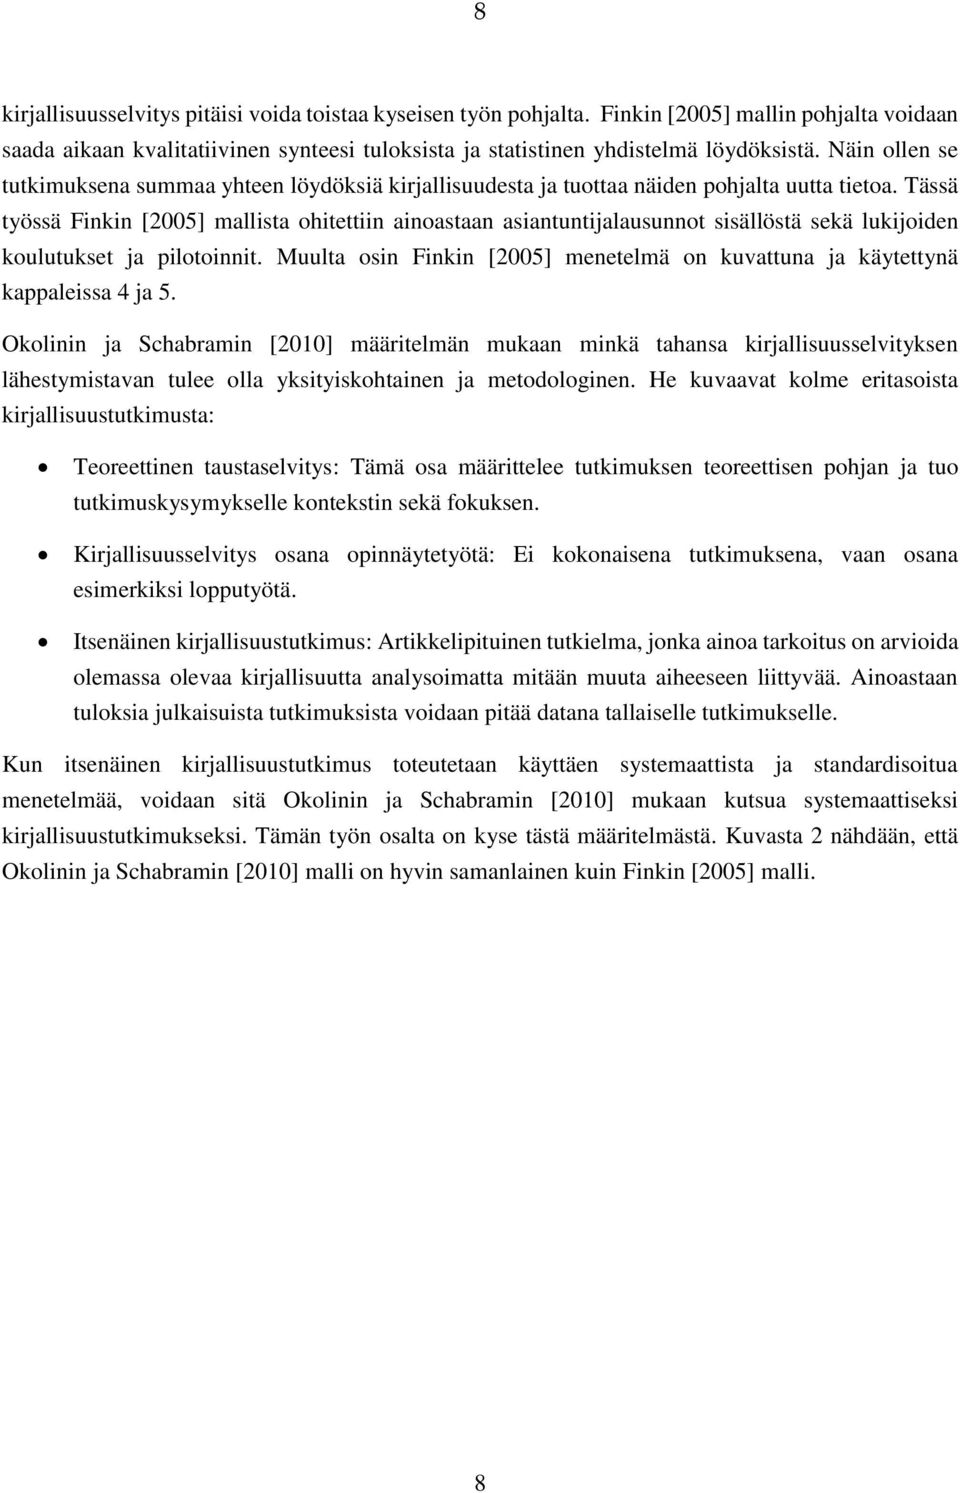 E-OPPIMISJÄRJESTELMIEN ARKKITEHTUURIMALLIT- SYSTEMAATTINEN  KIRJALLISUUSKATSAUS. Ville Murtonen - PDF Free Download